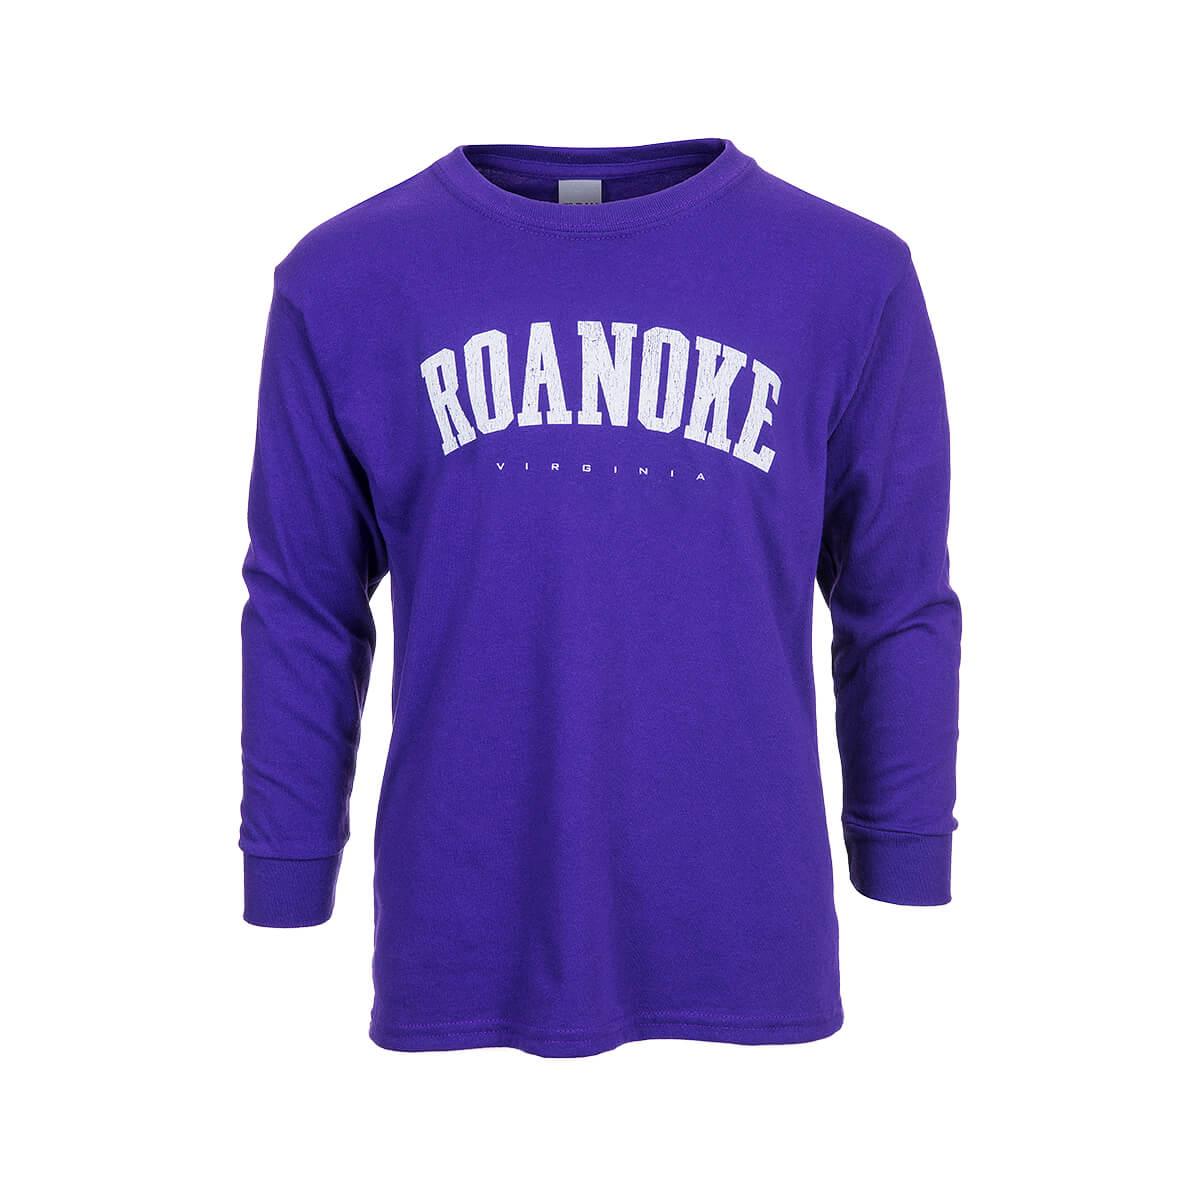  Kids ' Roanoke Long Sleeve T- Shirt